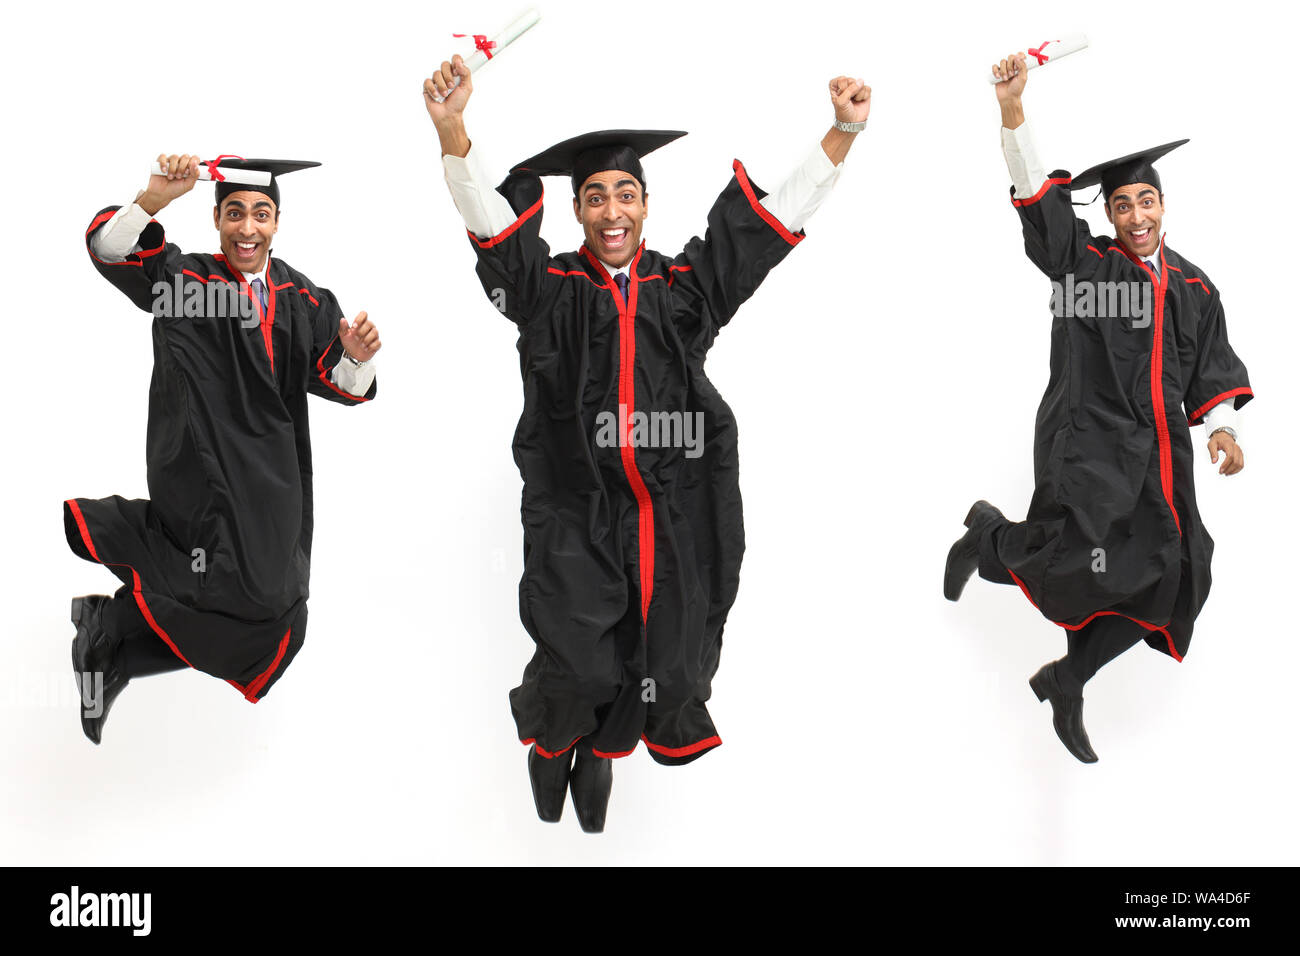 Plusieurs images d'un étudiant de l'université célébrant son diplôme Banque D'Images